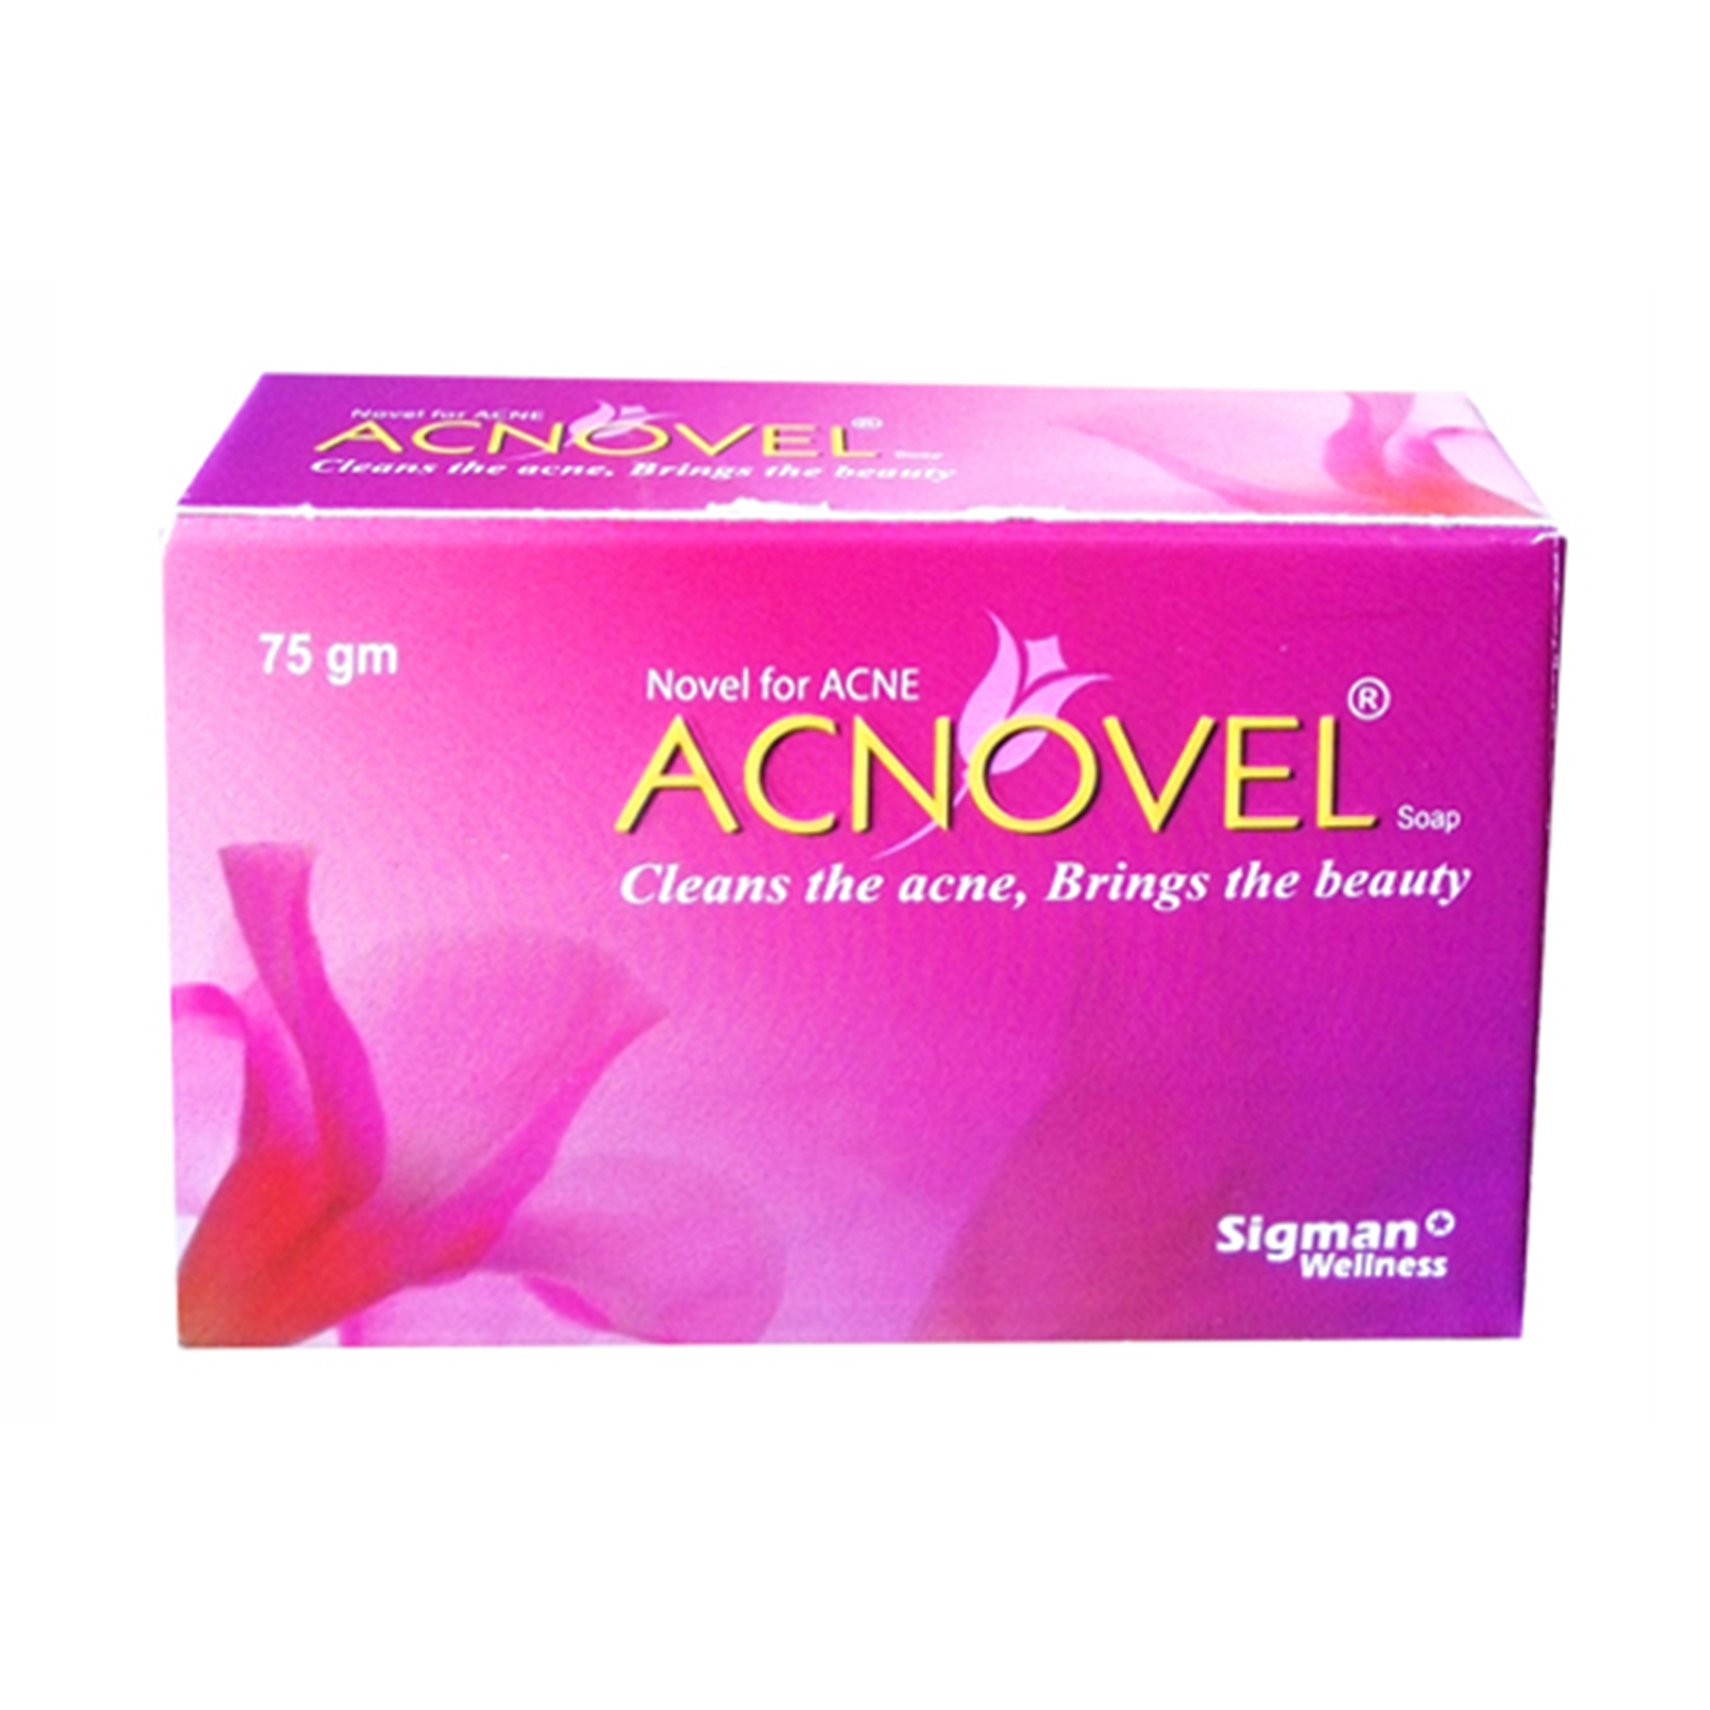 Acnovel Soap -75 gm